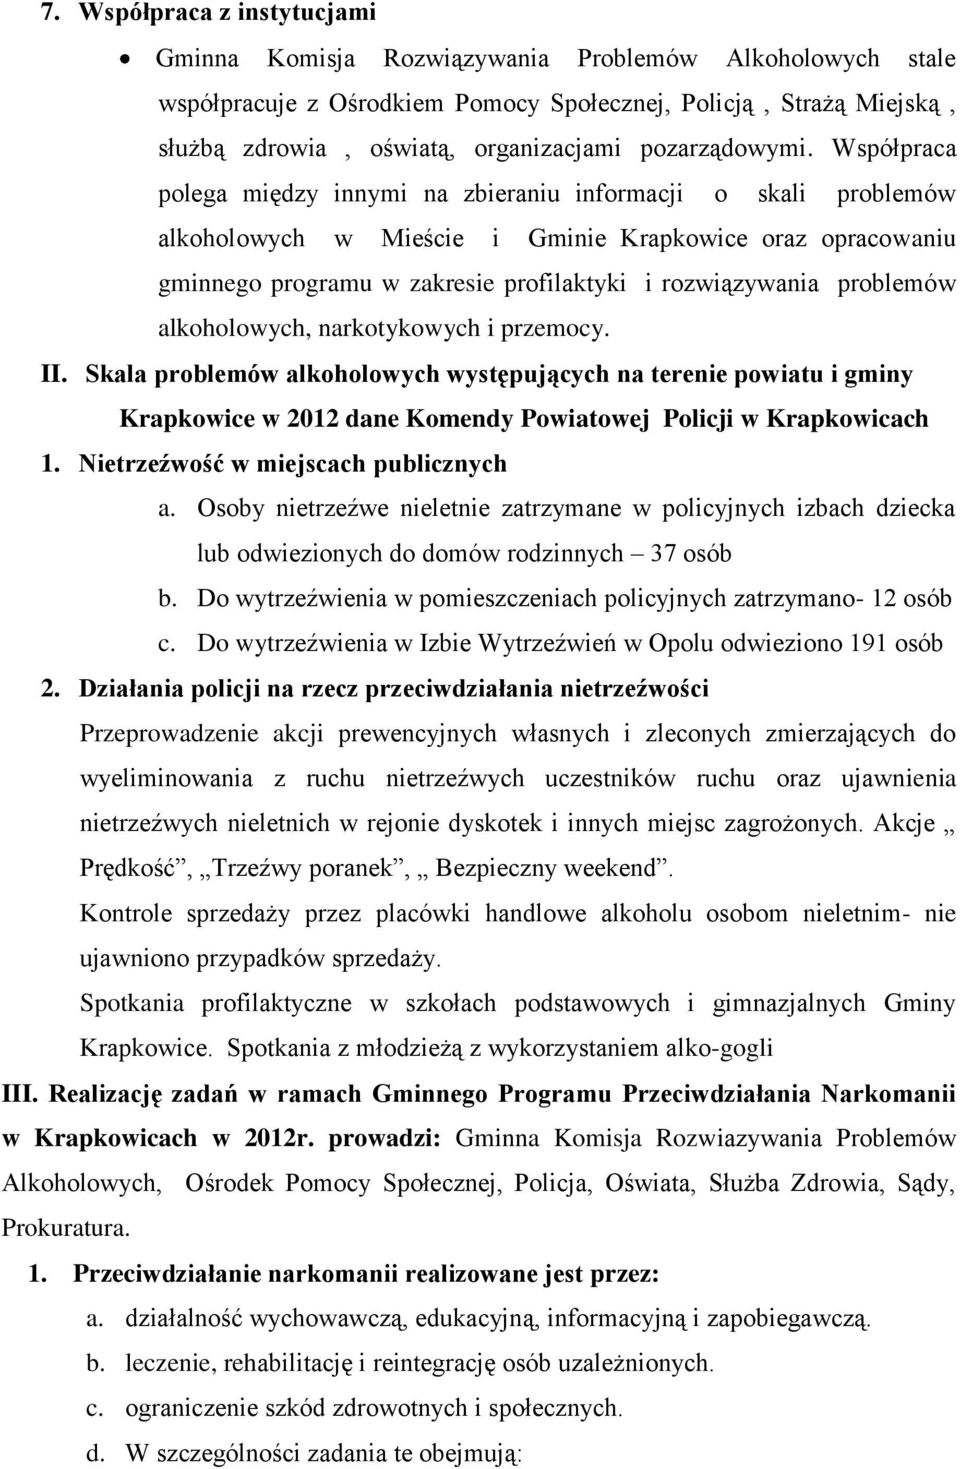 Współpraca polega między innymi na zbieraniu informacji o skali problemów alkoholowych w Mieście i Gminie Krapkowice oraz opracowaniu gminnego programu w zakresie profilaktyki i rozwiązywania